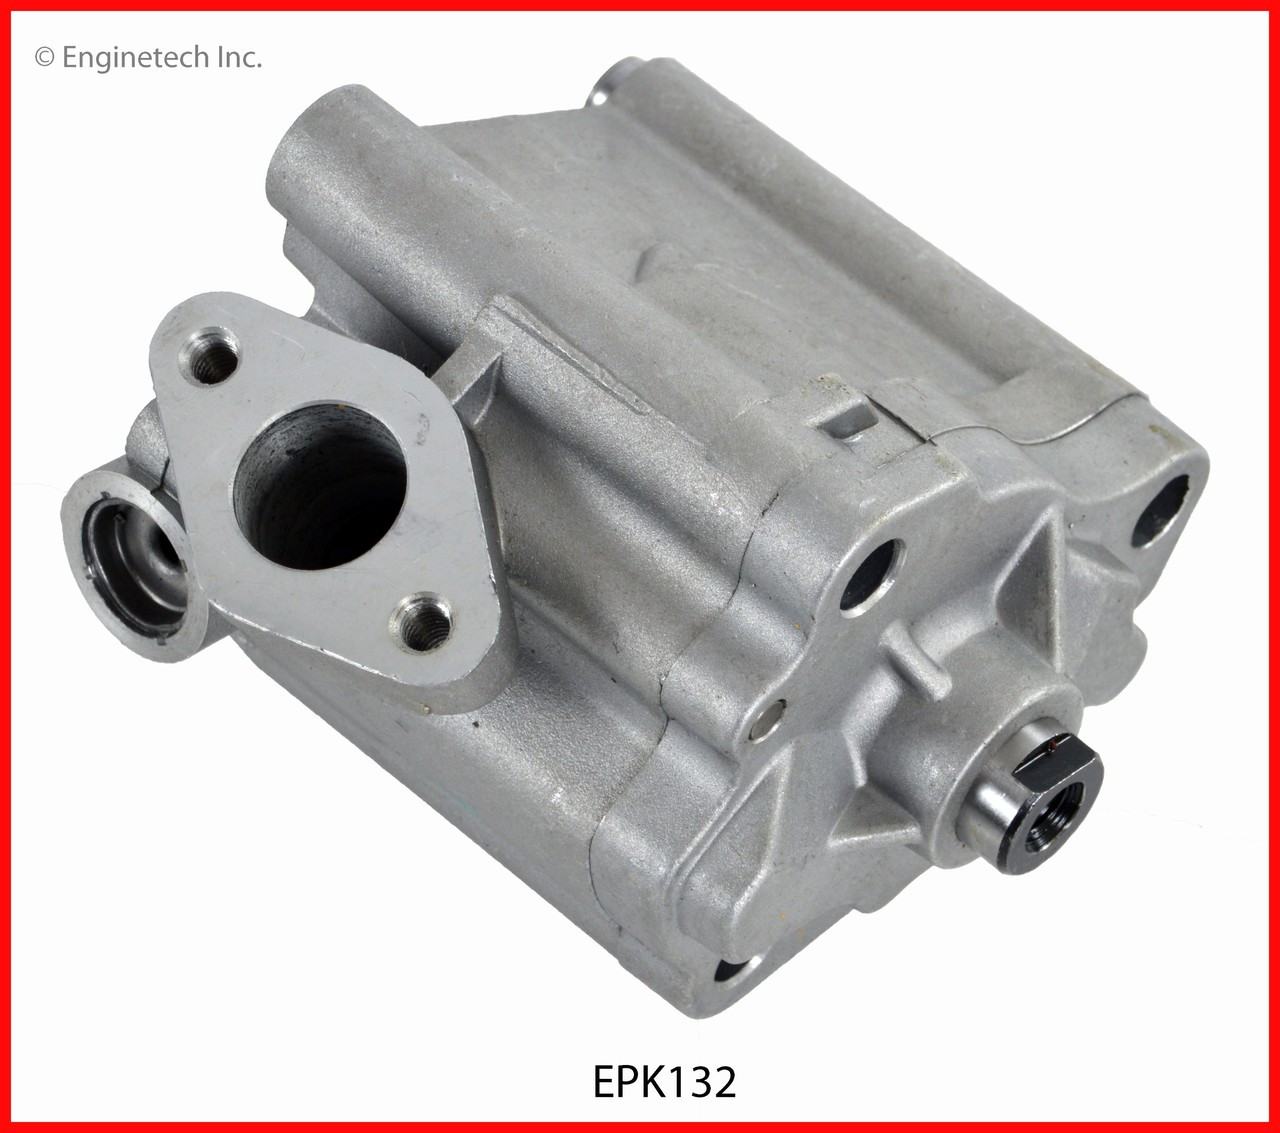 Oil Pump - 2010 Mazda 3 2.3L (EPK132.I82)